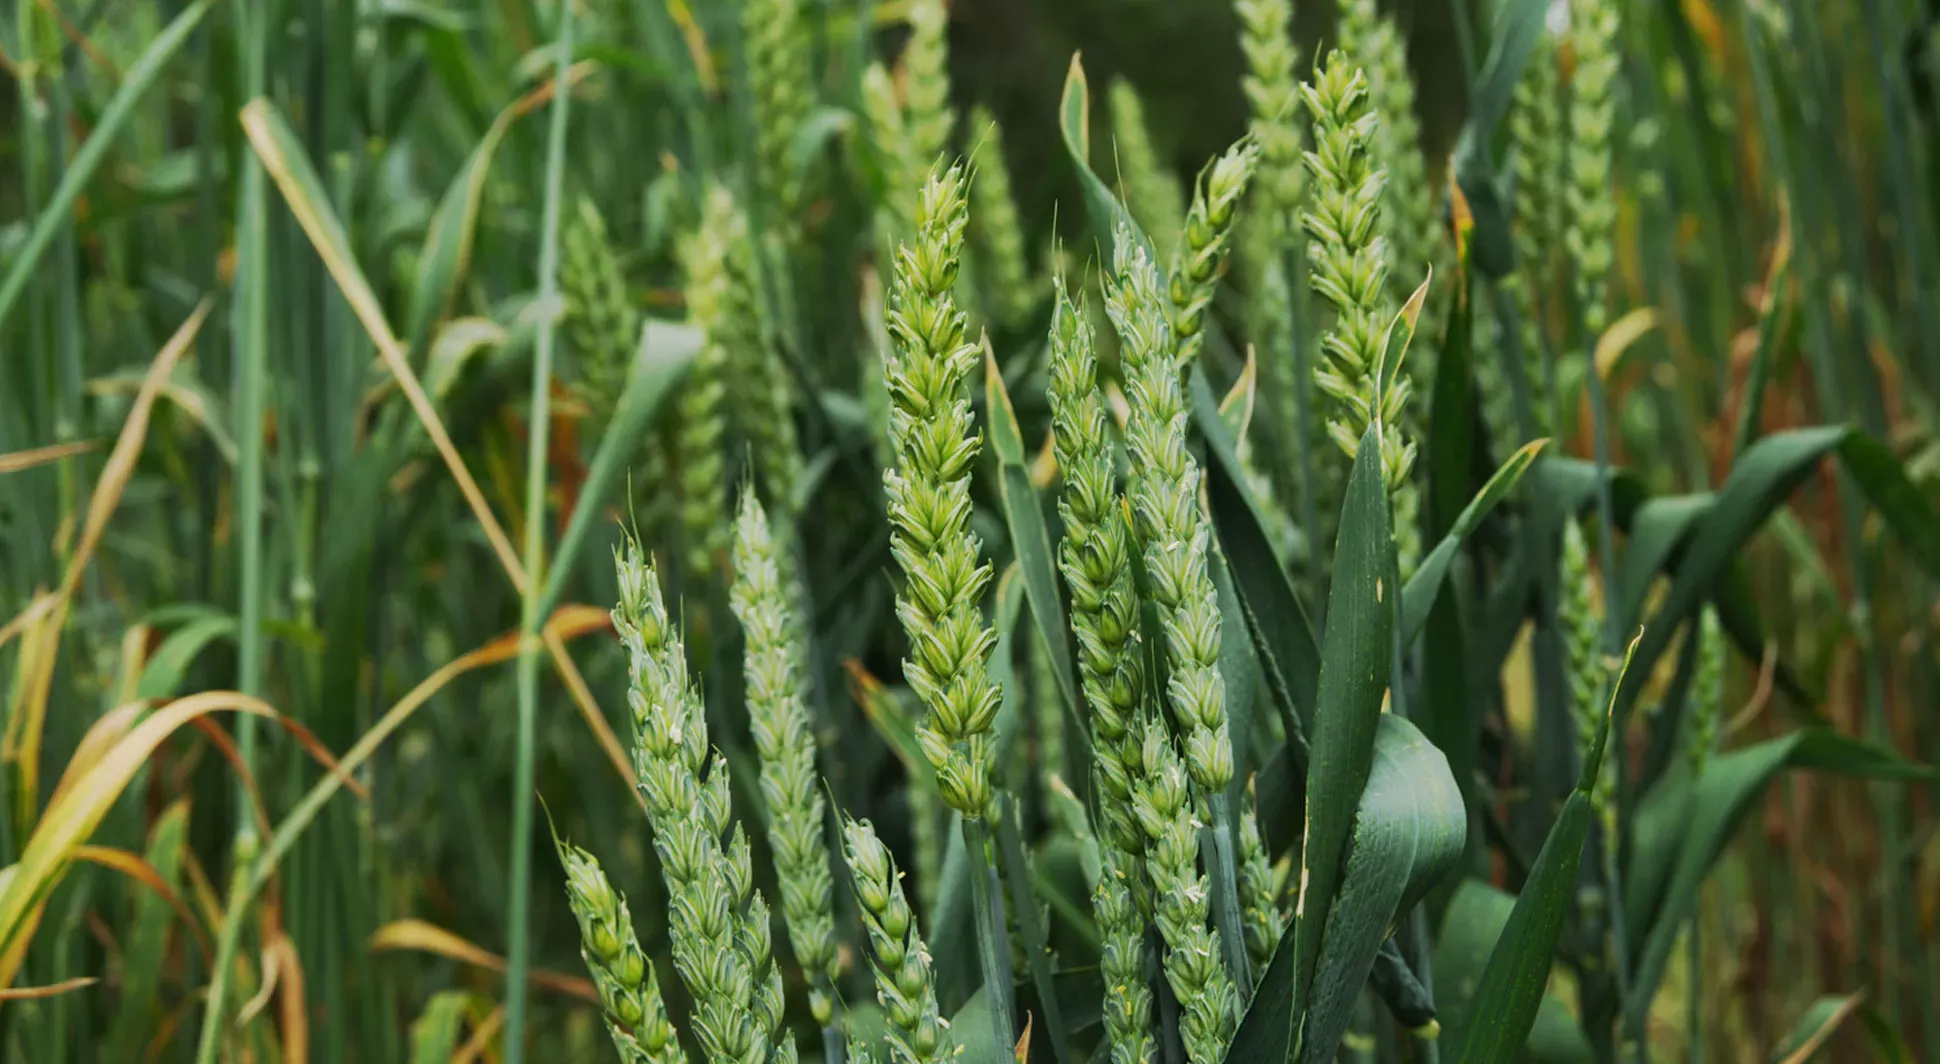 Green wheat Triticum aestivum growing in a field